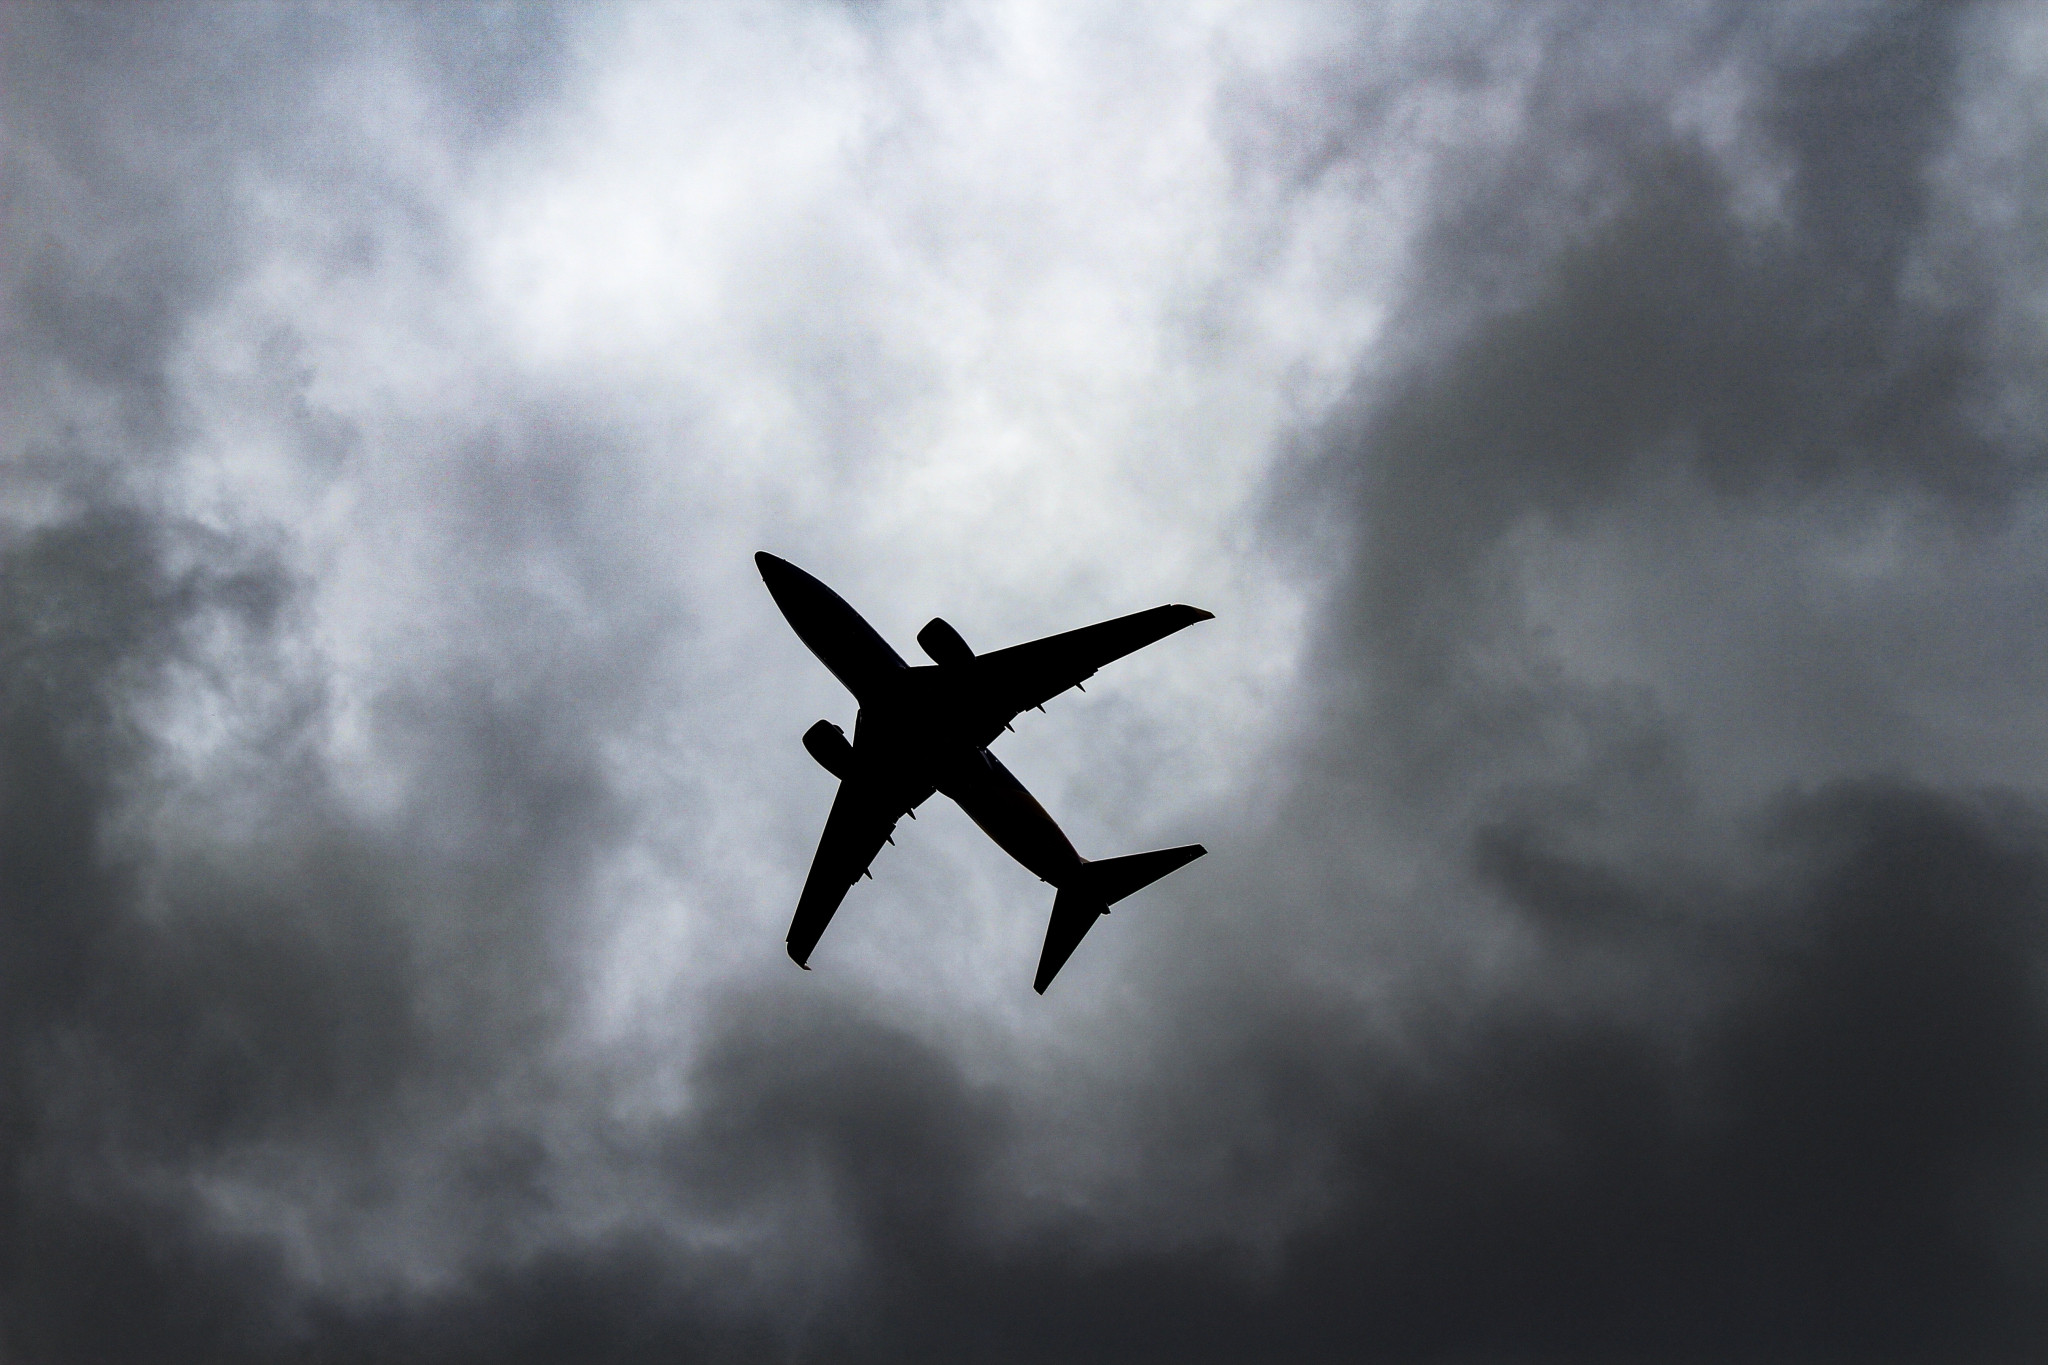 В небе над Саранском в самолет Superjet попала молния